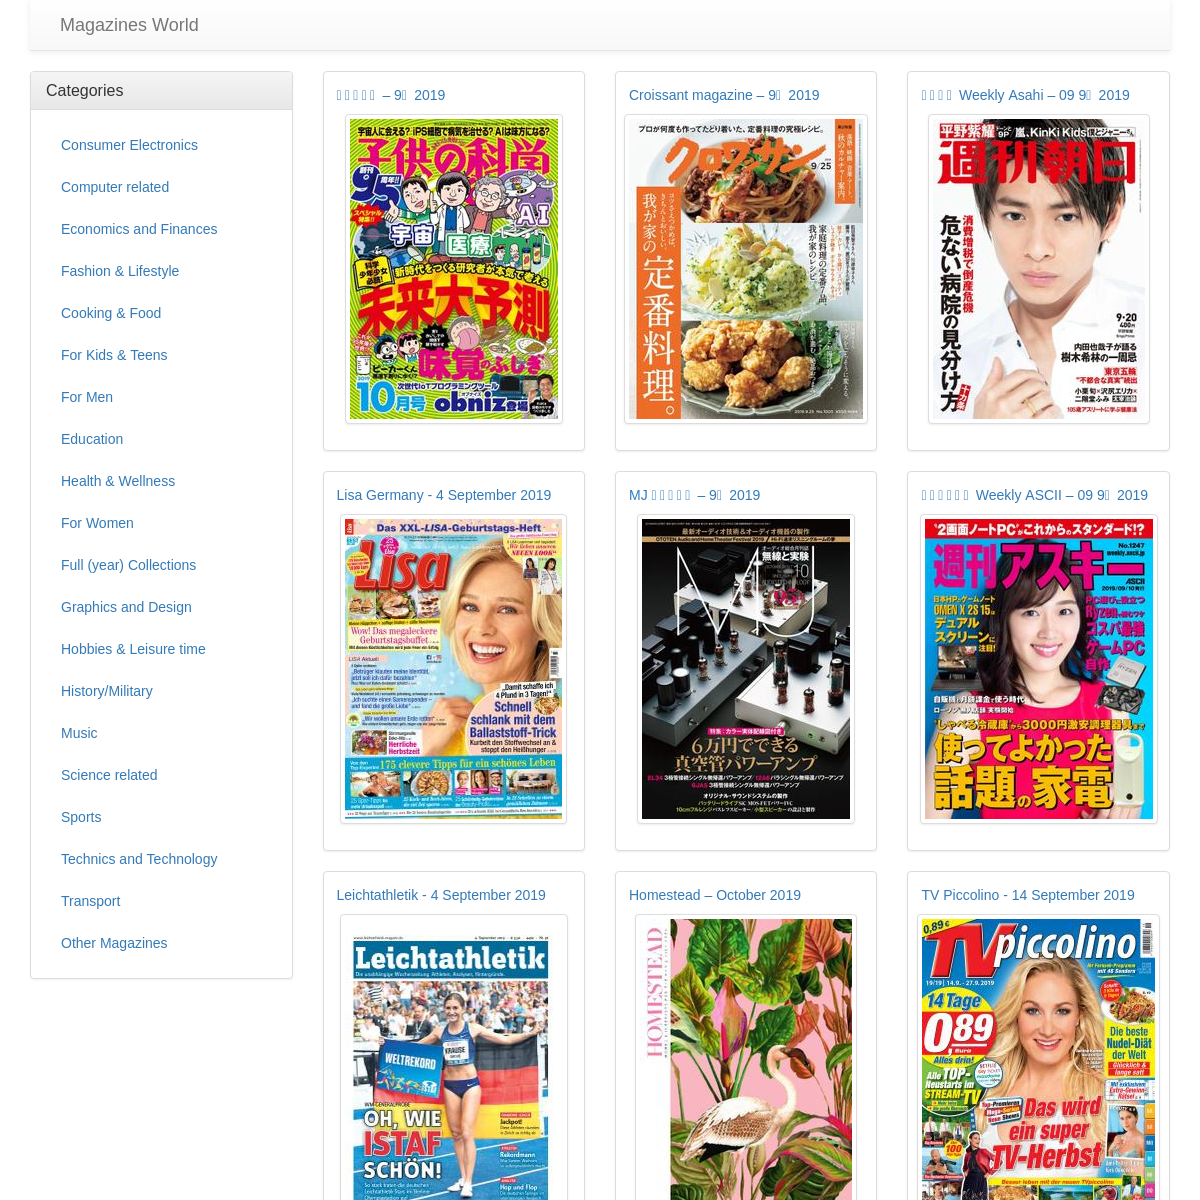 Magazines / Magazines World